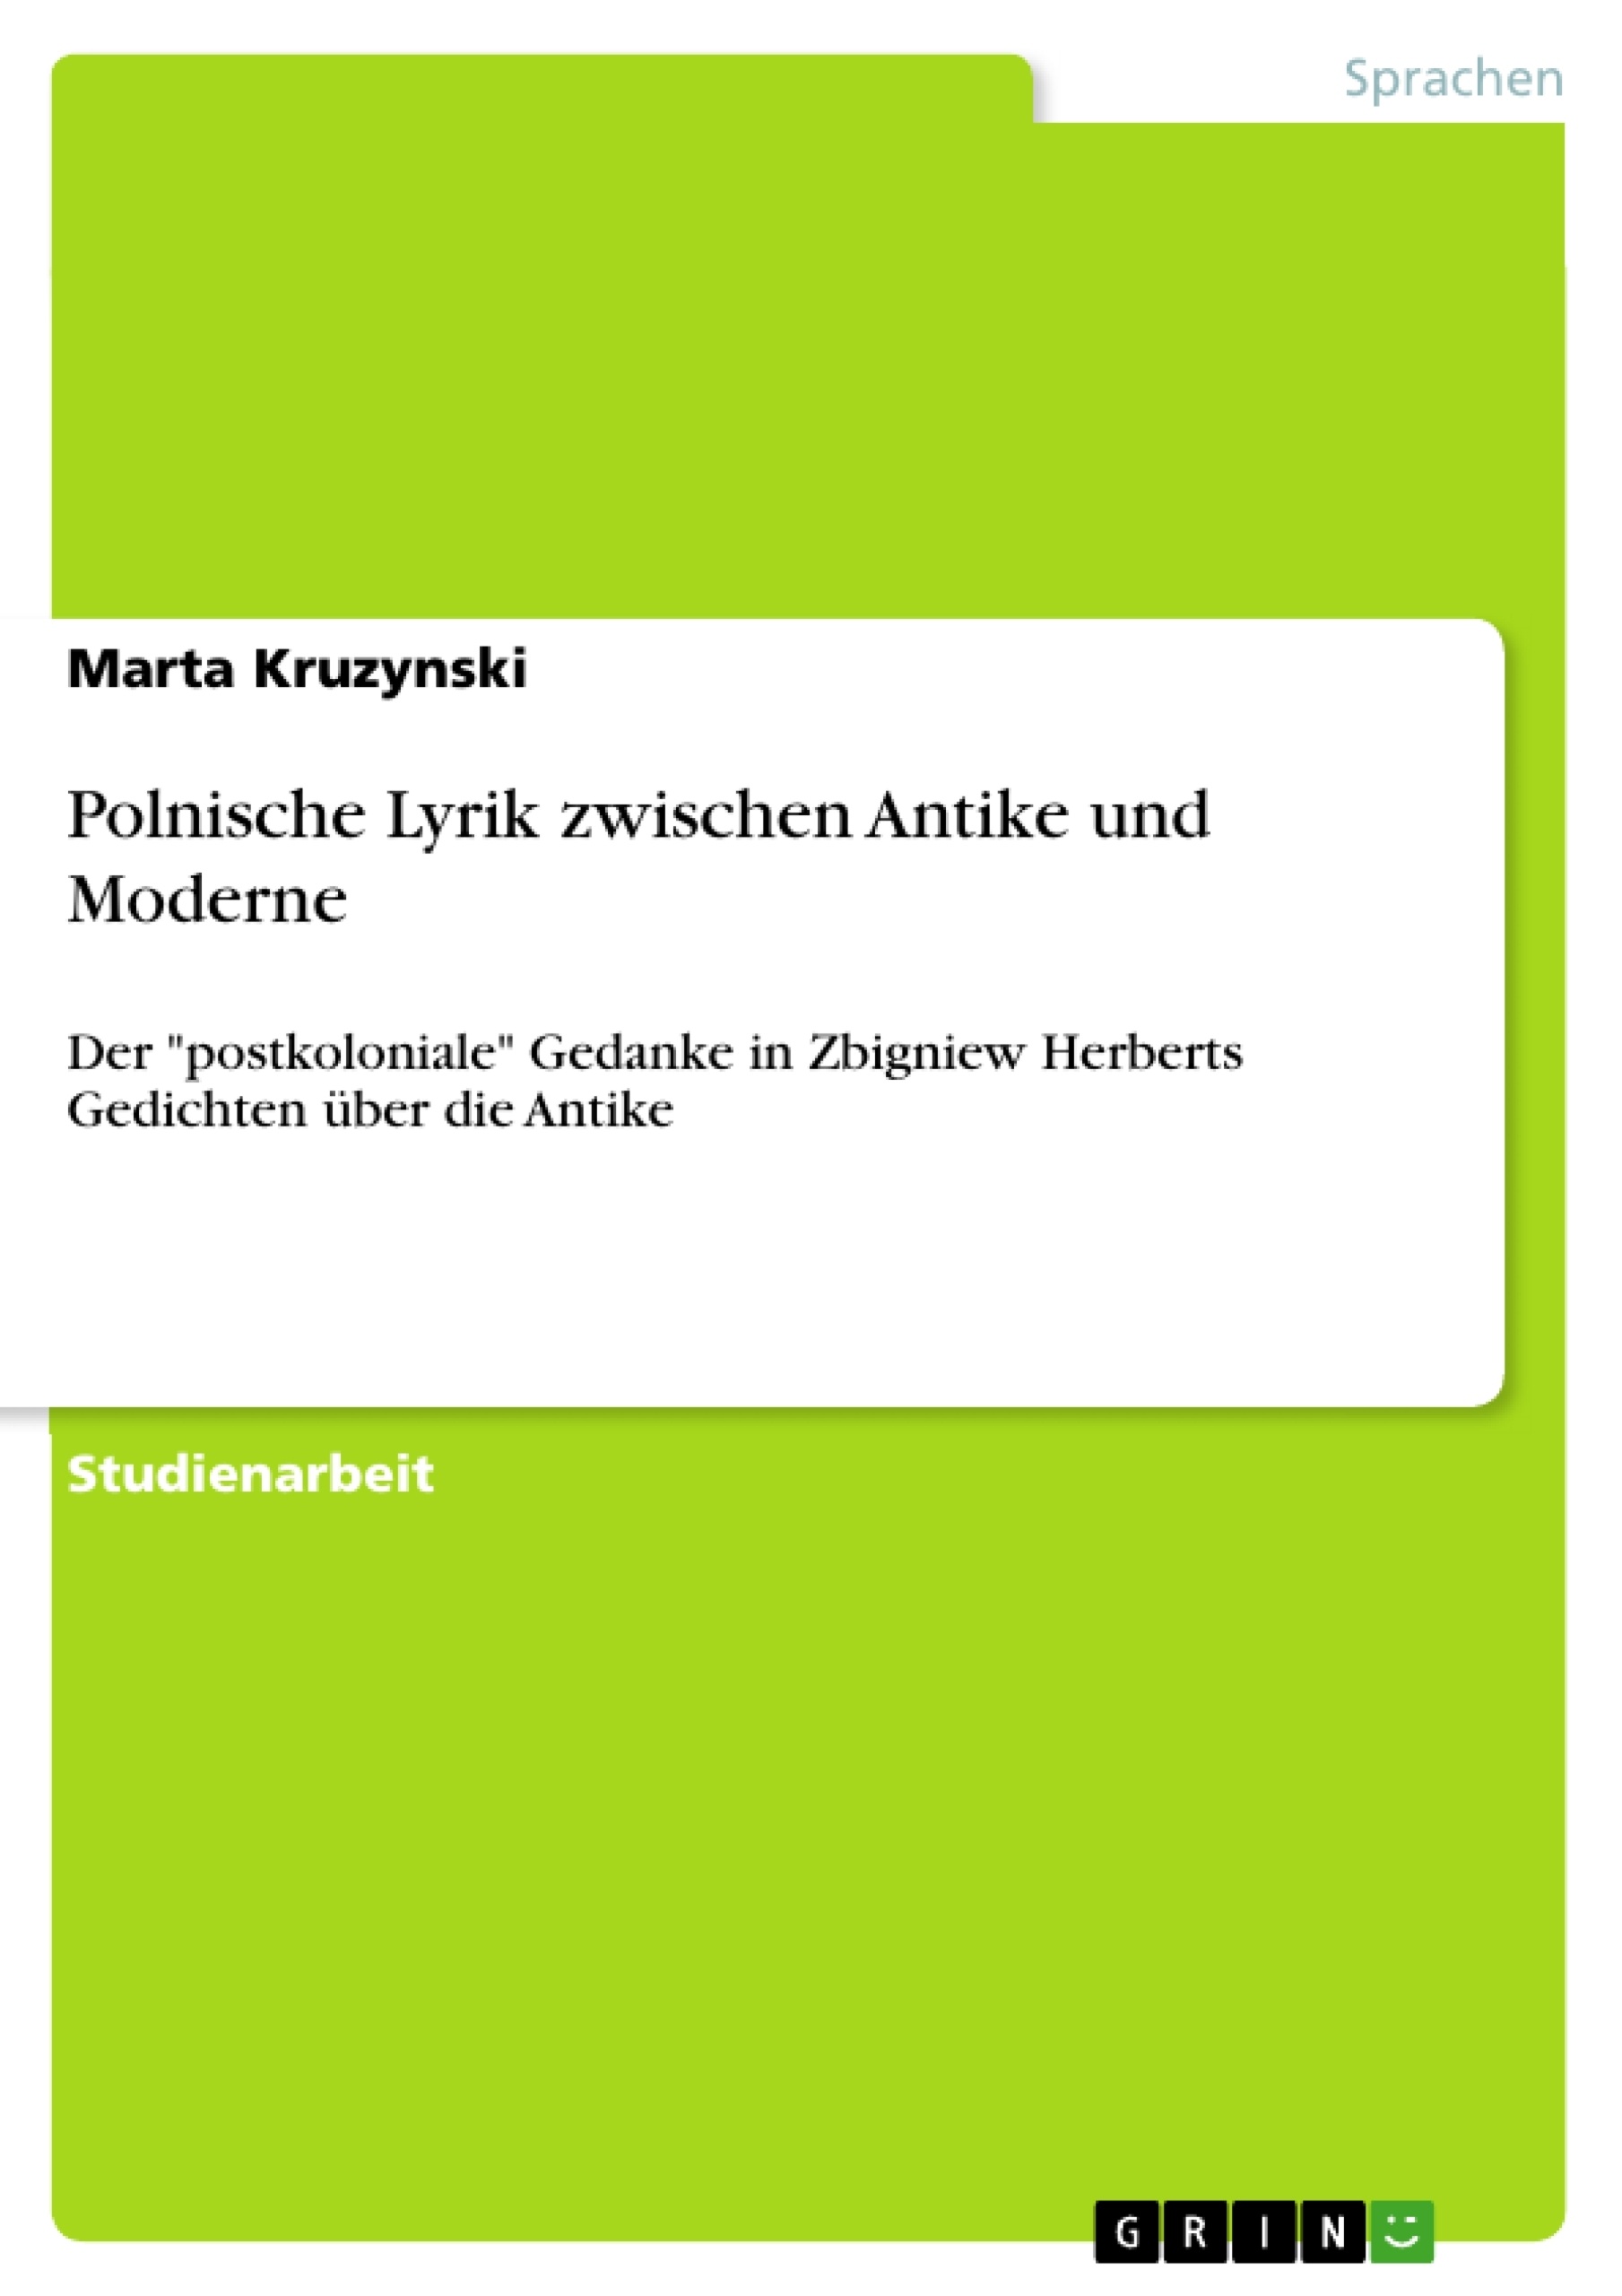 Title: Polnische Lyrik zwischen Antike und Moderne